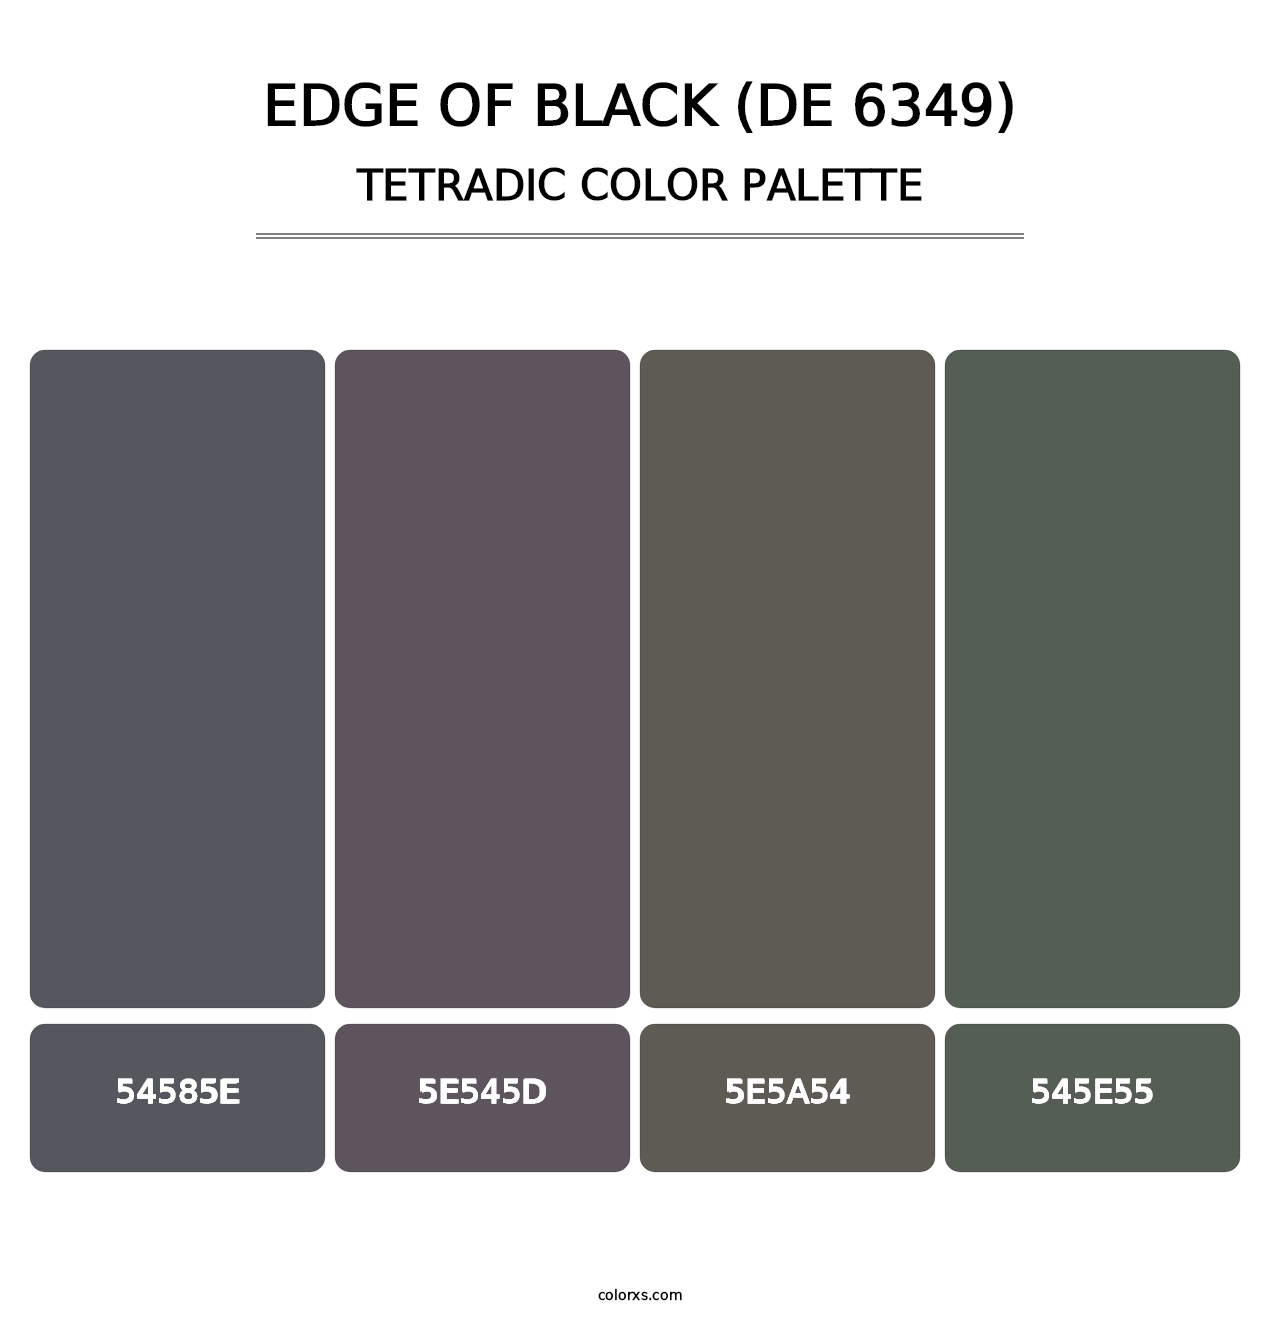 Edge of Black (DE 6349) - Tetradic Color Palette